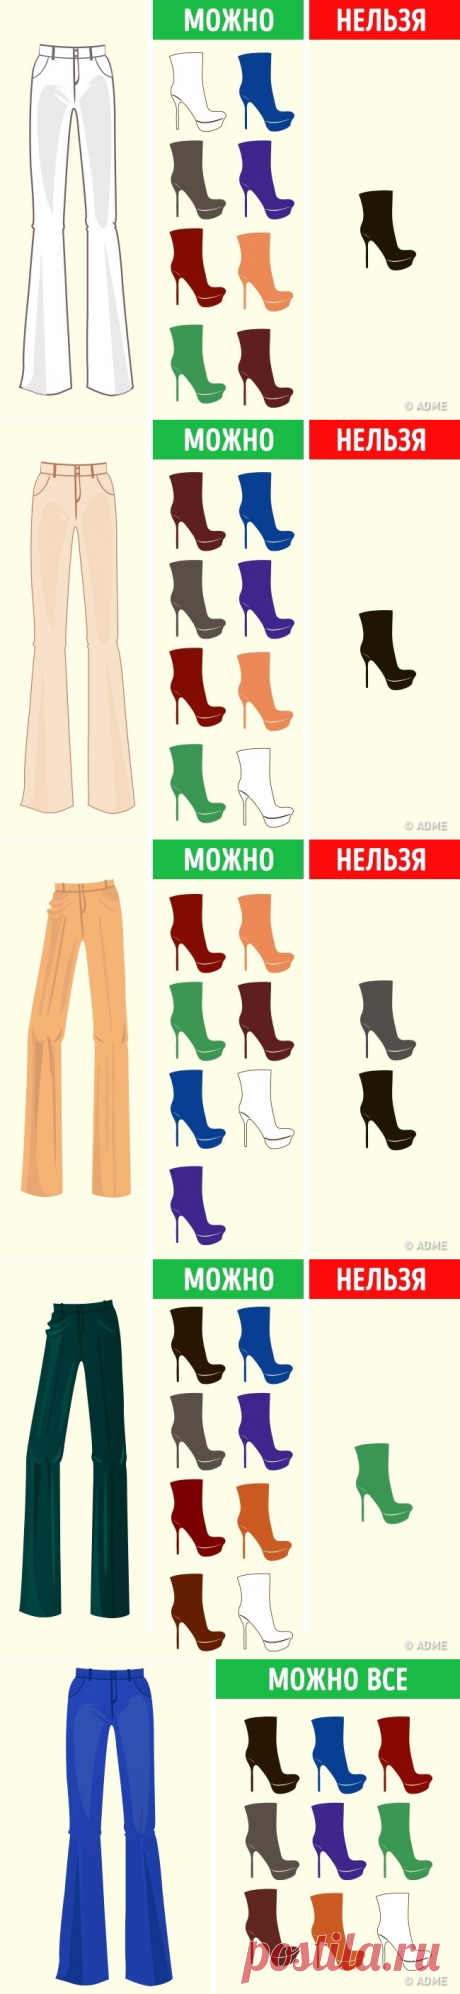 Как подобрать цвет обуви к любой одежде и наоборот